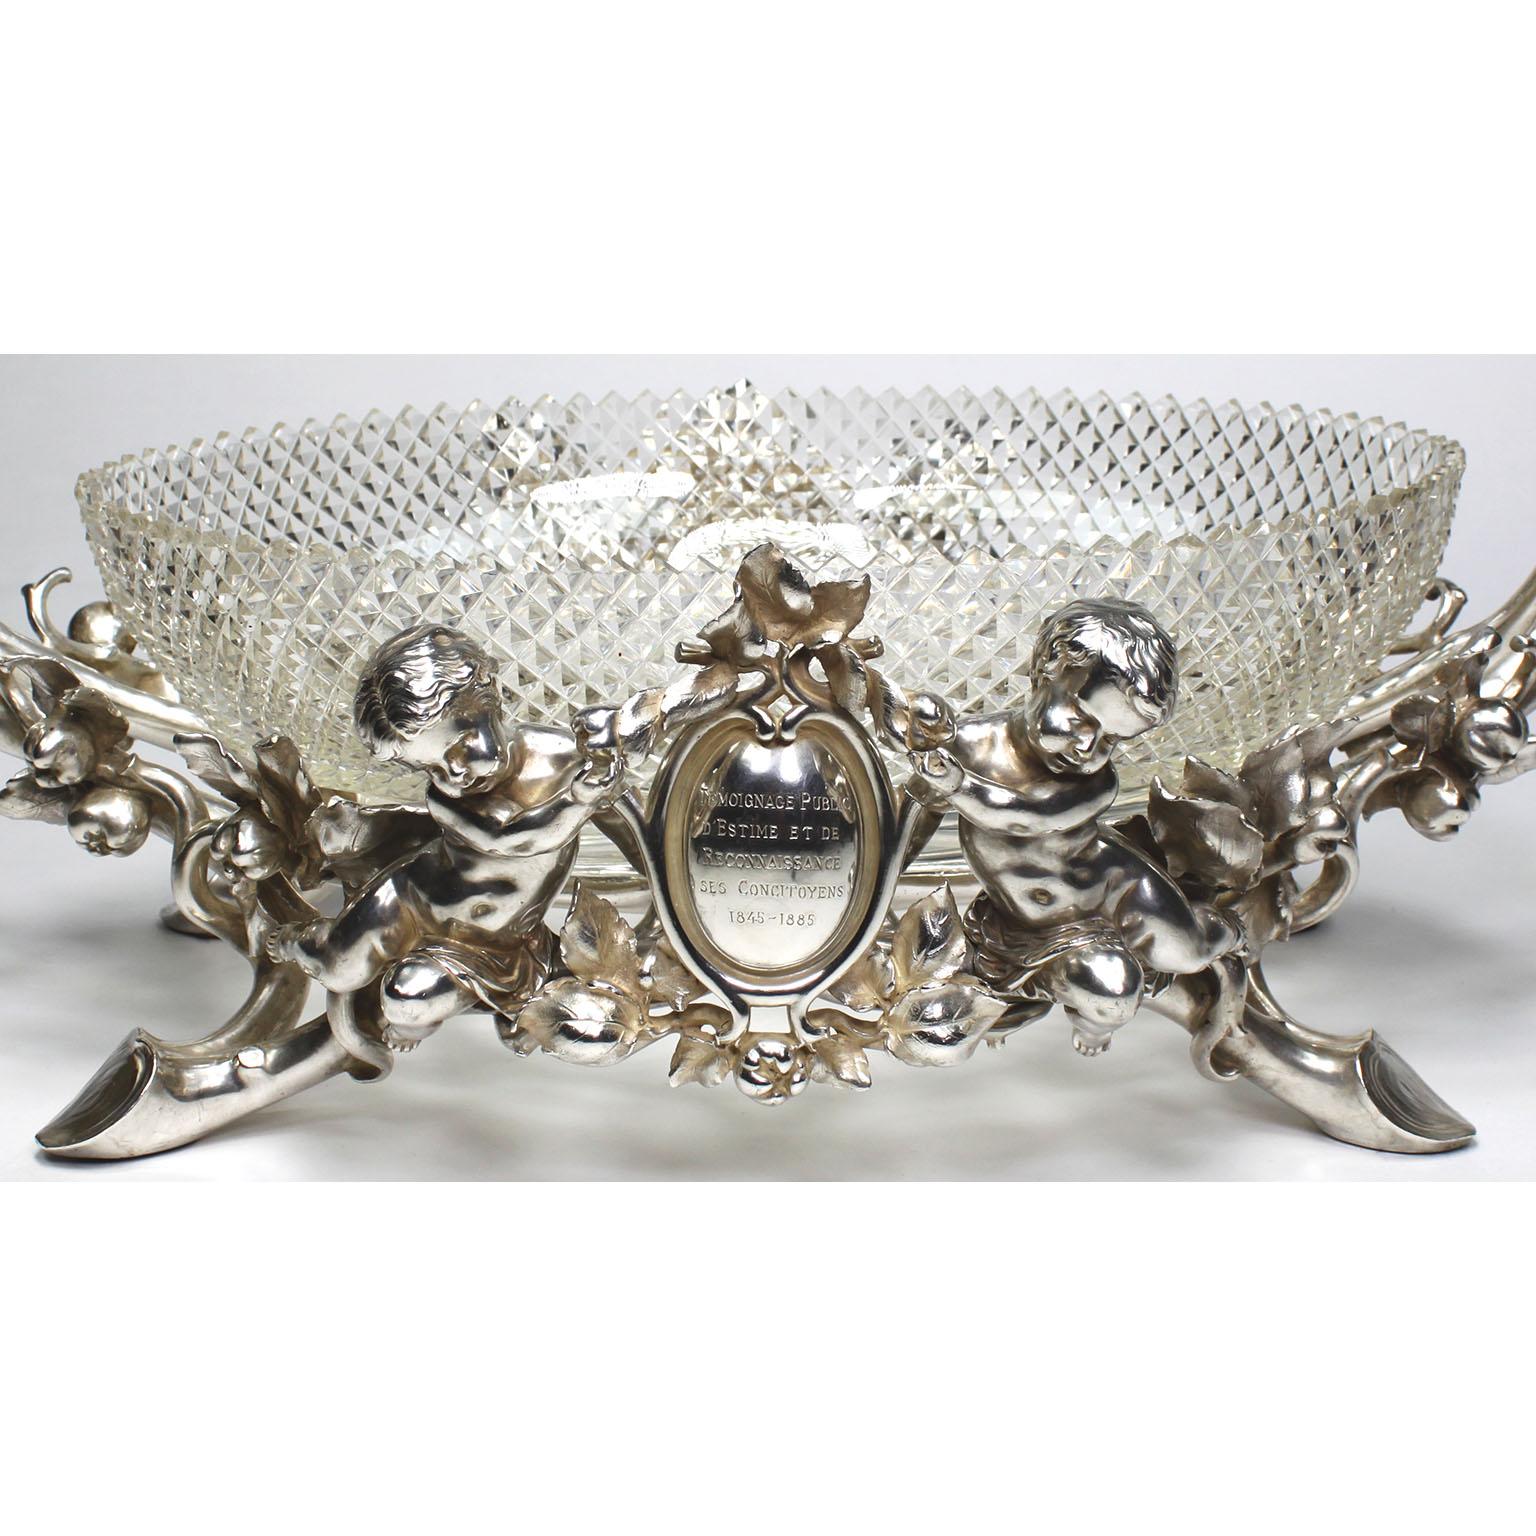 Très beau centre de table en argent de style Louis XV de Christofle & Cie du 19e/20e siècle, doté d'un plat central ovale en verre taillé en diamant, attribué à Baccarat, et flanqué de deux Putti (enfants), le tout reposant sur un pied en forme de